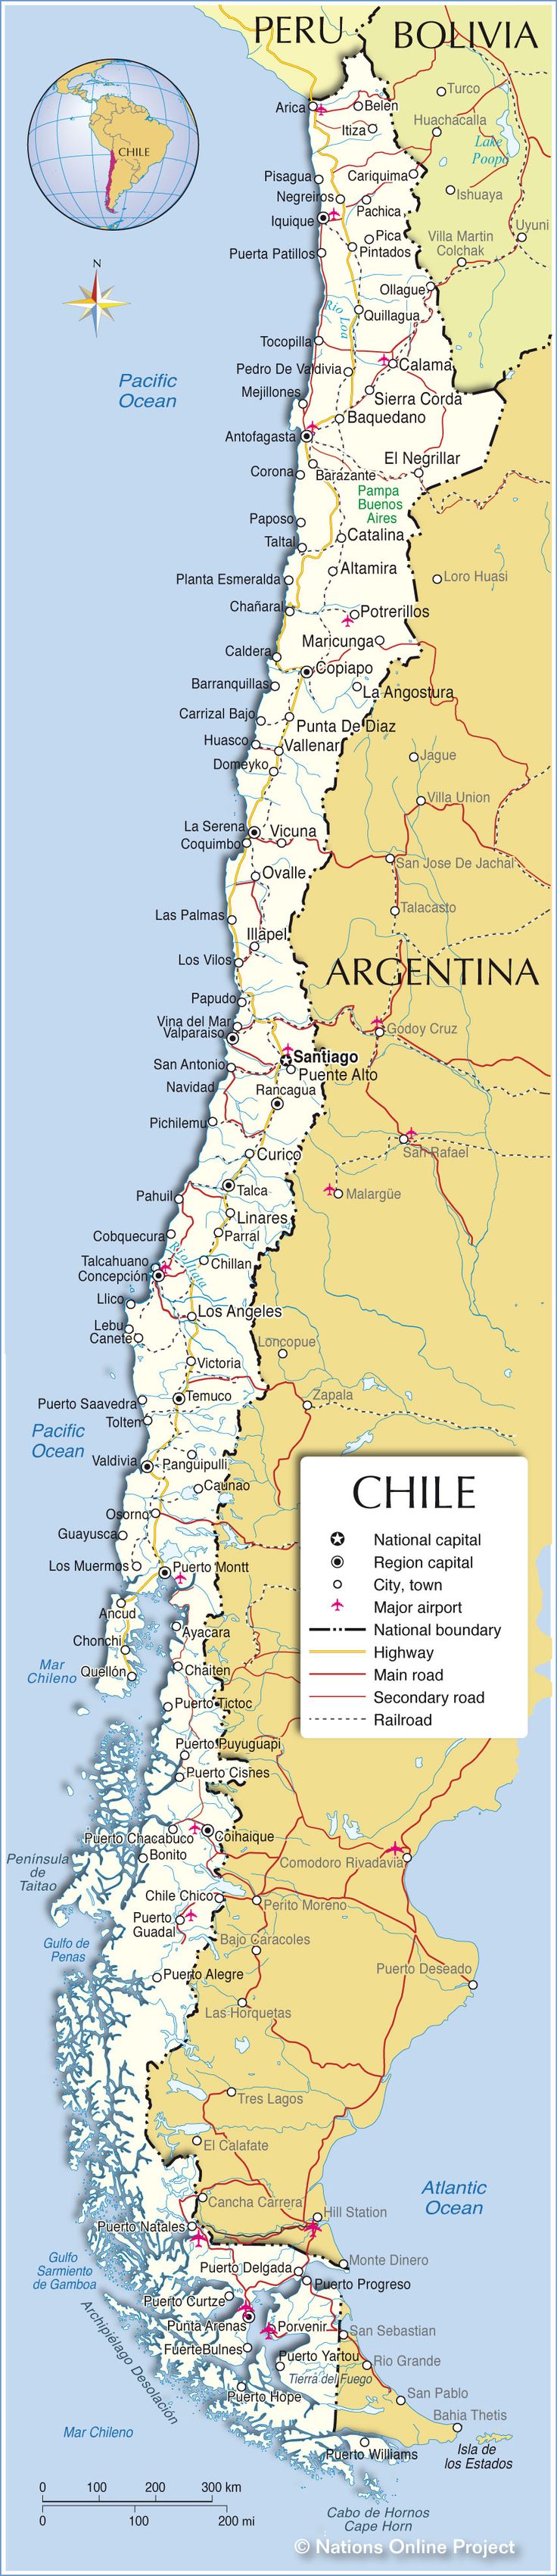 (Chile)